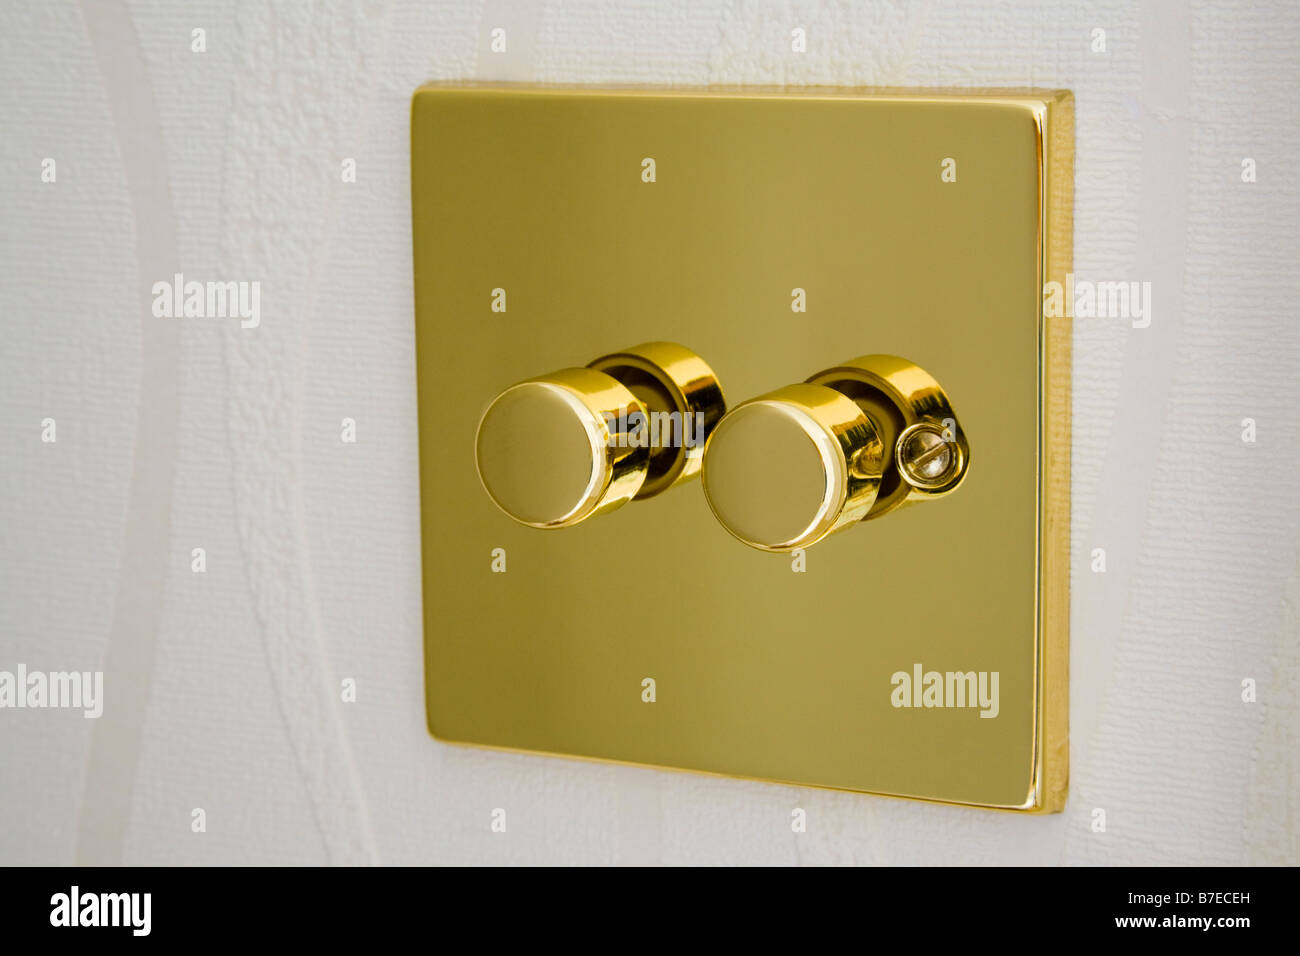 Gold Metall Doppel Elektro dimmer Lichtschalter an der Wand.  England-UK-Großbritannien Stockfotografie - Alamy